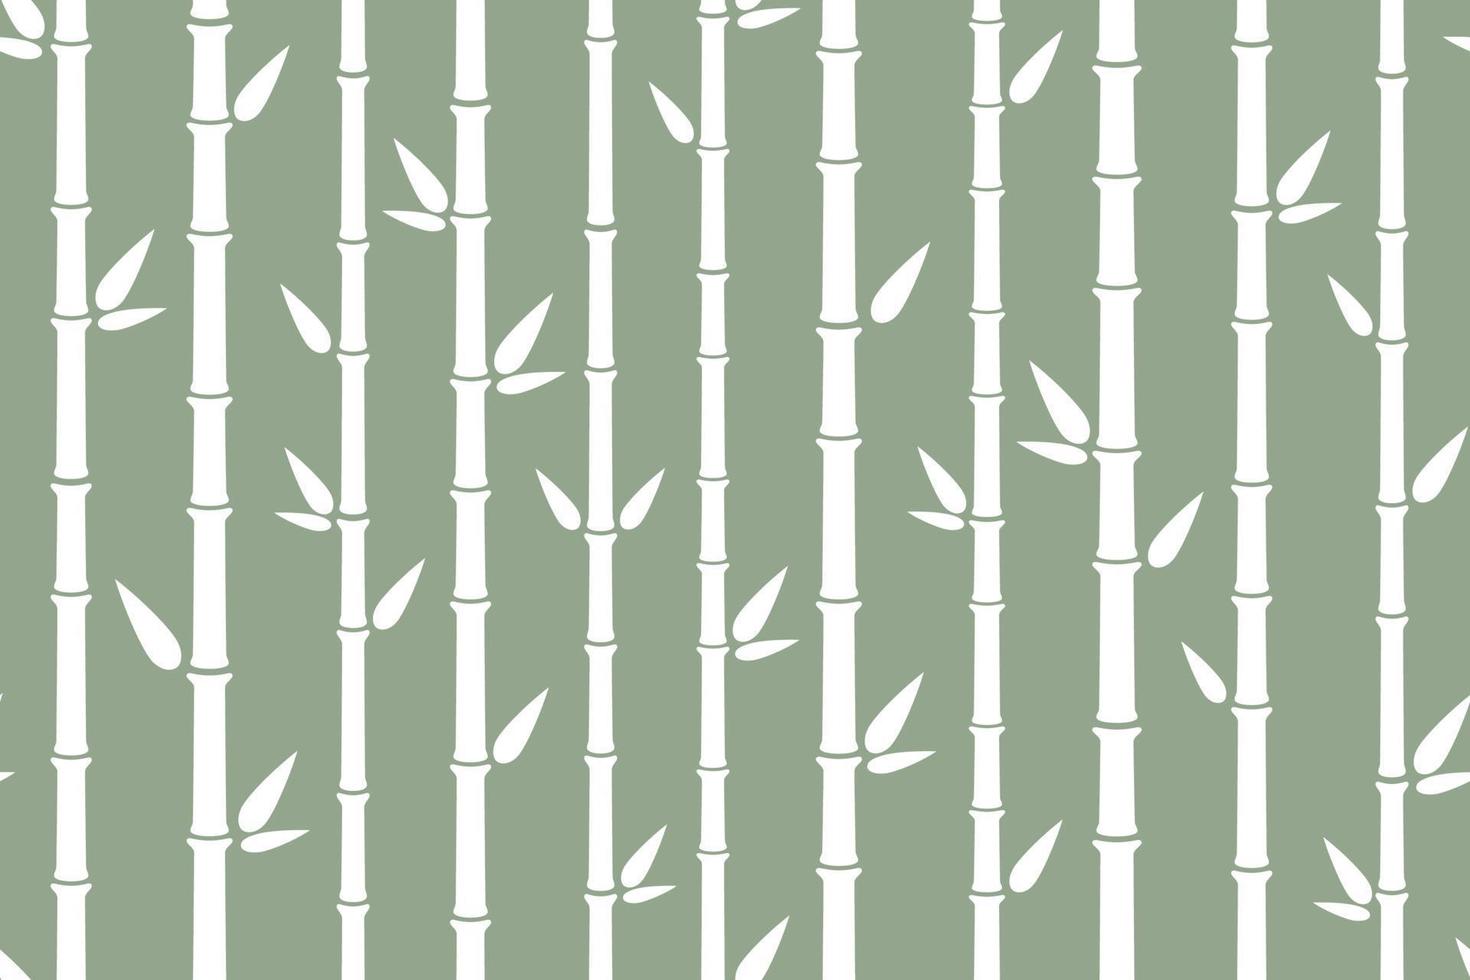 padrão sem emenda de bambu. fundo de bambu plano simples com talo, galho e folhas. design de pano de fundo da natureza. textura asiática abstrata. ilustração vetorial em fundo branco vetor